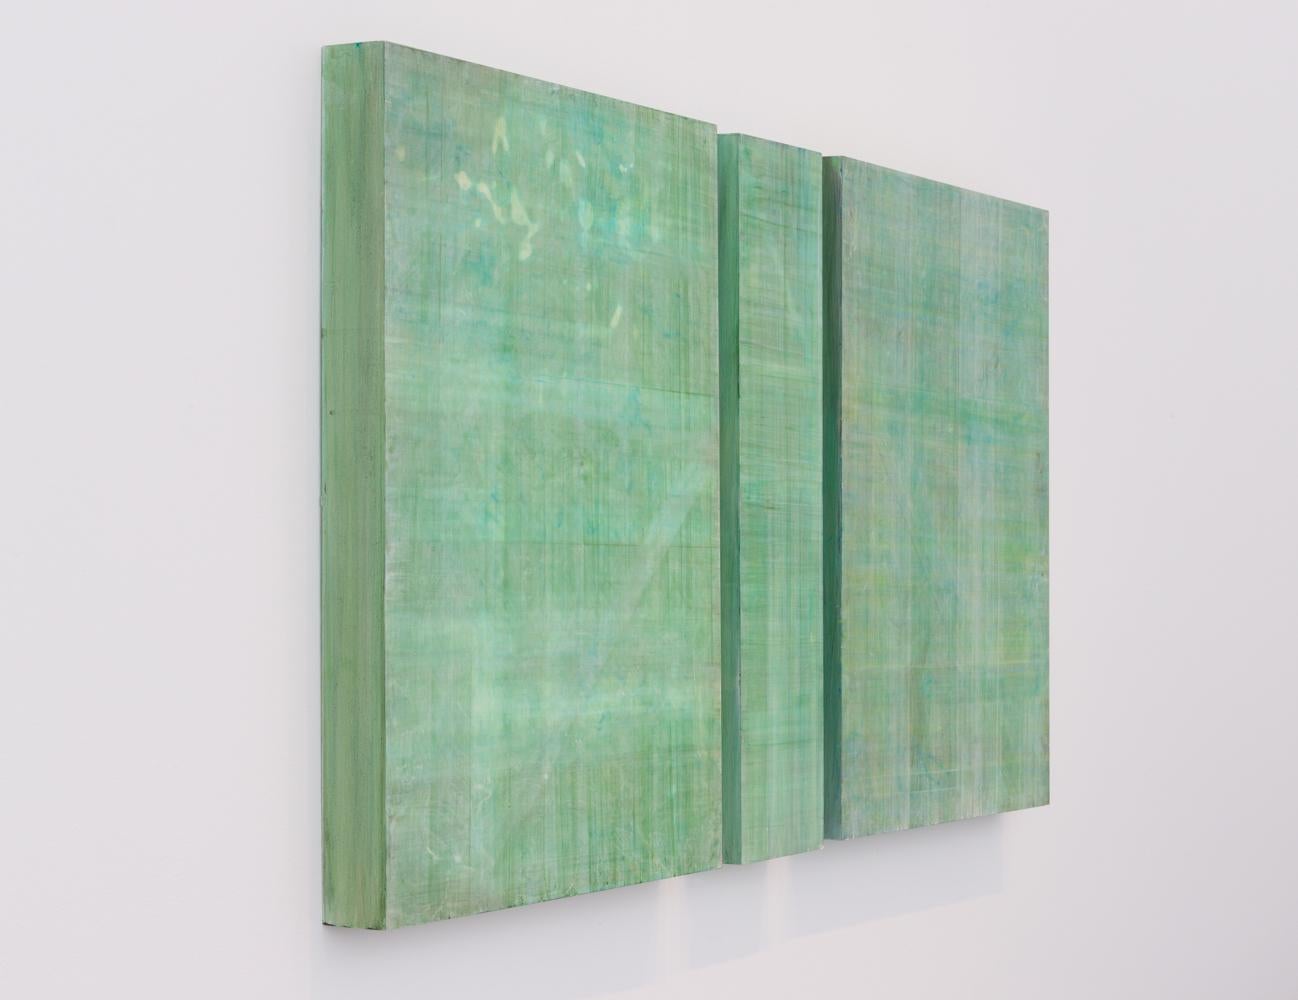 Von der Nature inspirierte minimalistische abstrakte Farbfeldmalerei auf drei Holztafeln in Hellgrün- und Blautönen
Acryl auf 3 Tafeln (2 Tafeln sind jeweils 24 x 18 x 2 Zoll groß, die mittlere Tafel ist 24 x 6 x 2 Zoll groß)
Gesamtmaße für